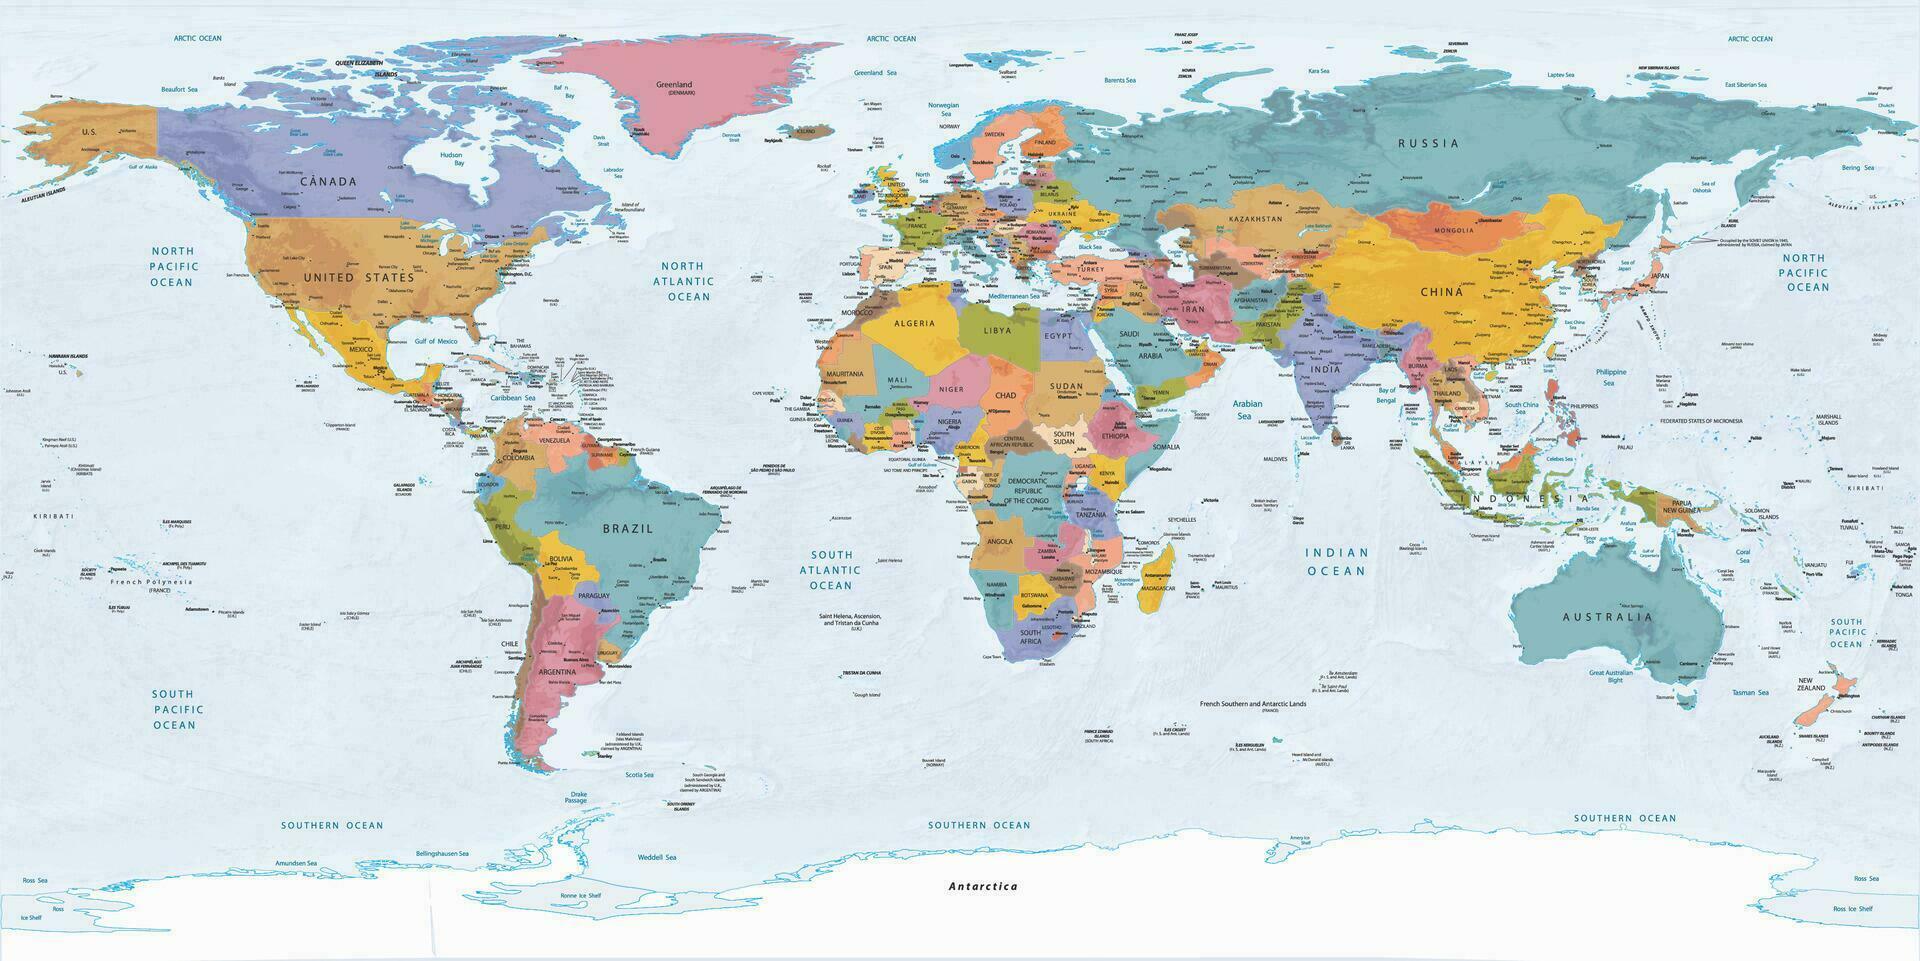 politisk värld Karta likriktad utsprång vektor